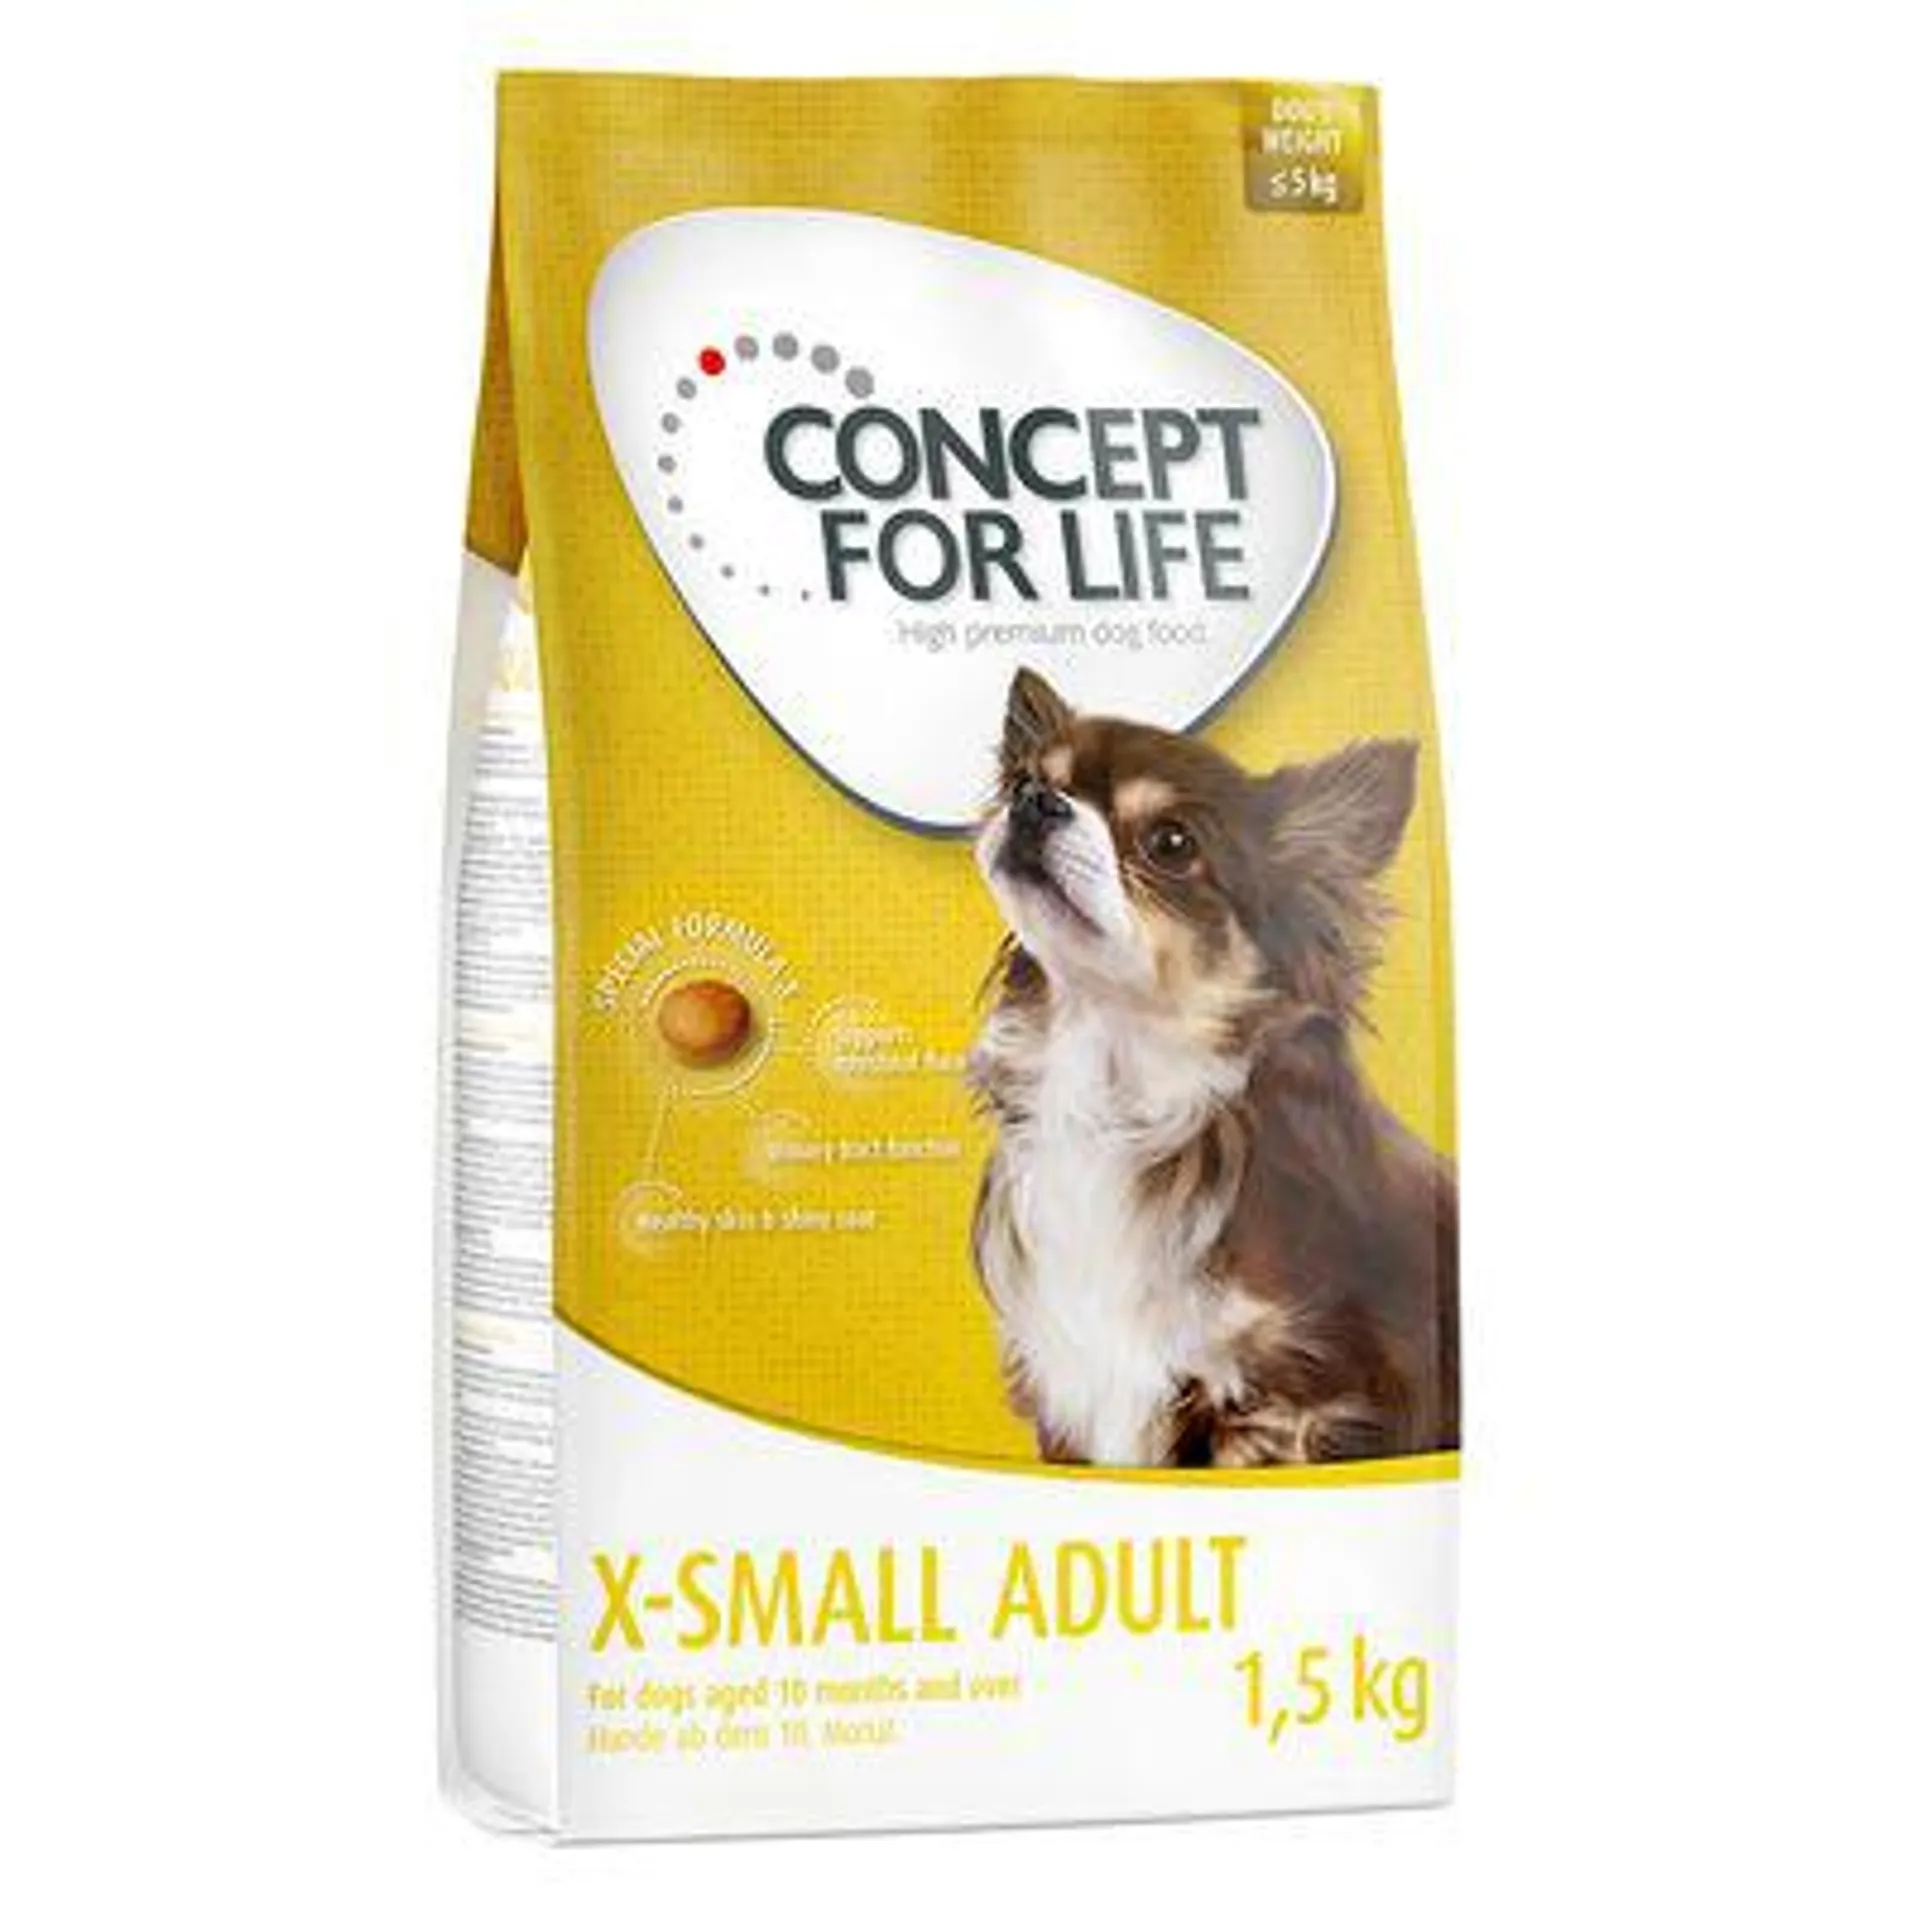 Concept for Life X-Small Adult a preço especial!